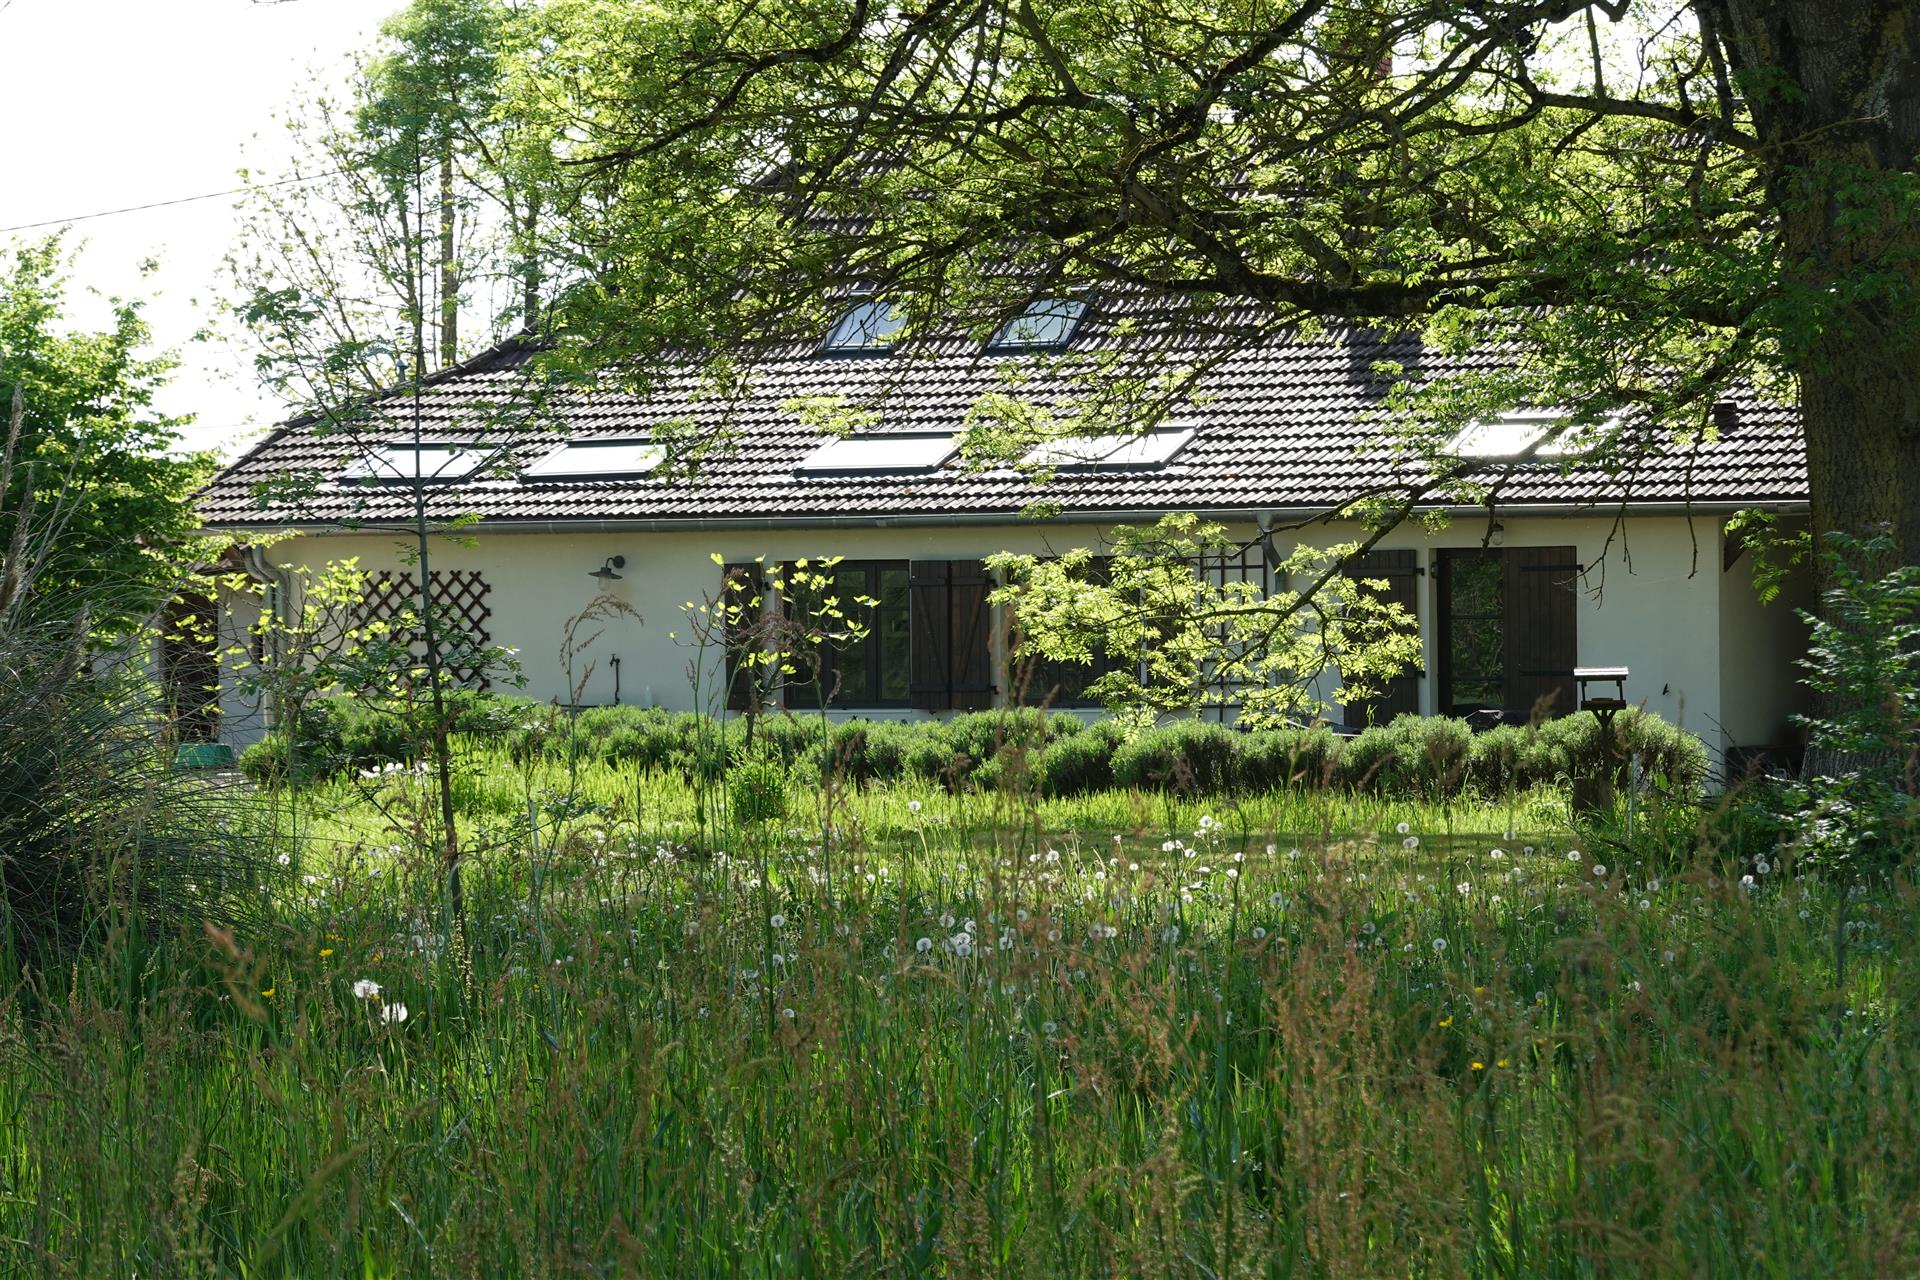 Casa bonita na Borgonha com jardim enorme